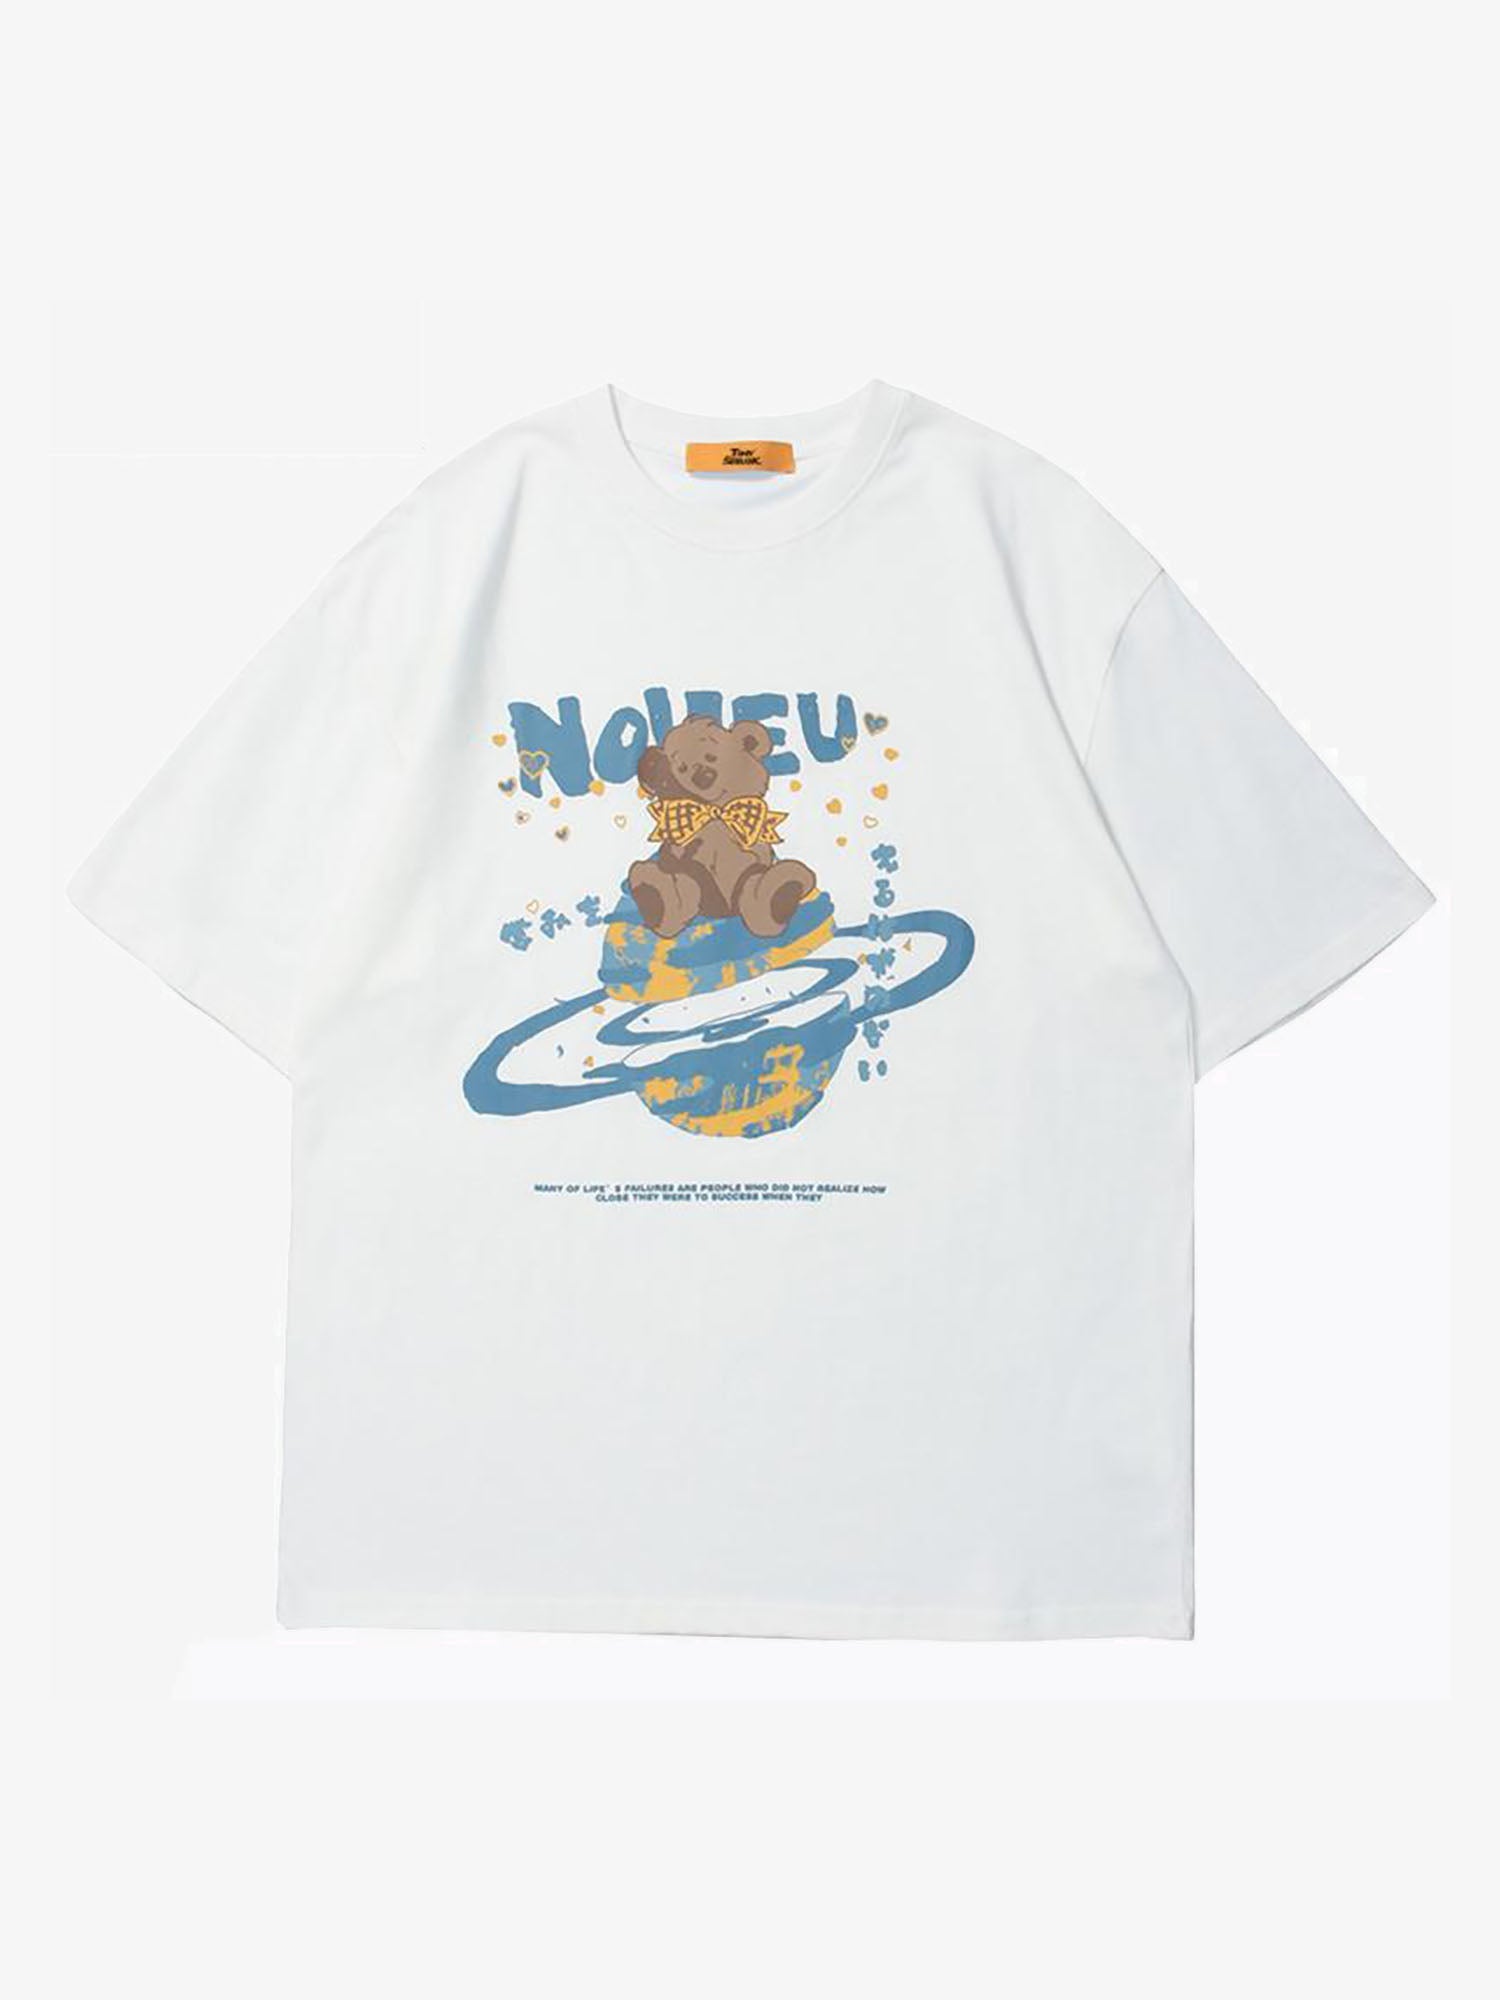 Kurzärmliges T-Shirt mit japanischem Kanji-Buchstabe Carrtoon Bear von Justnotag